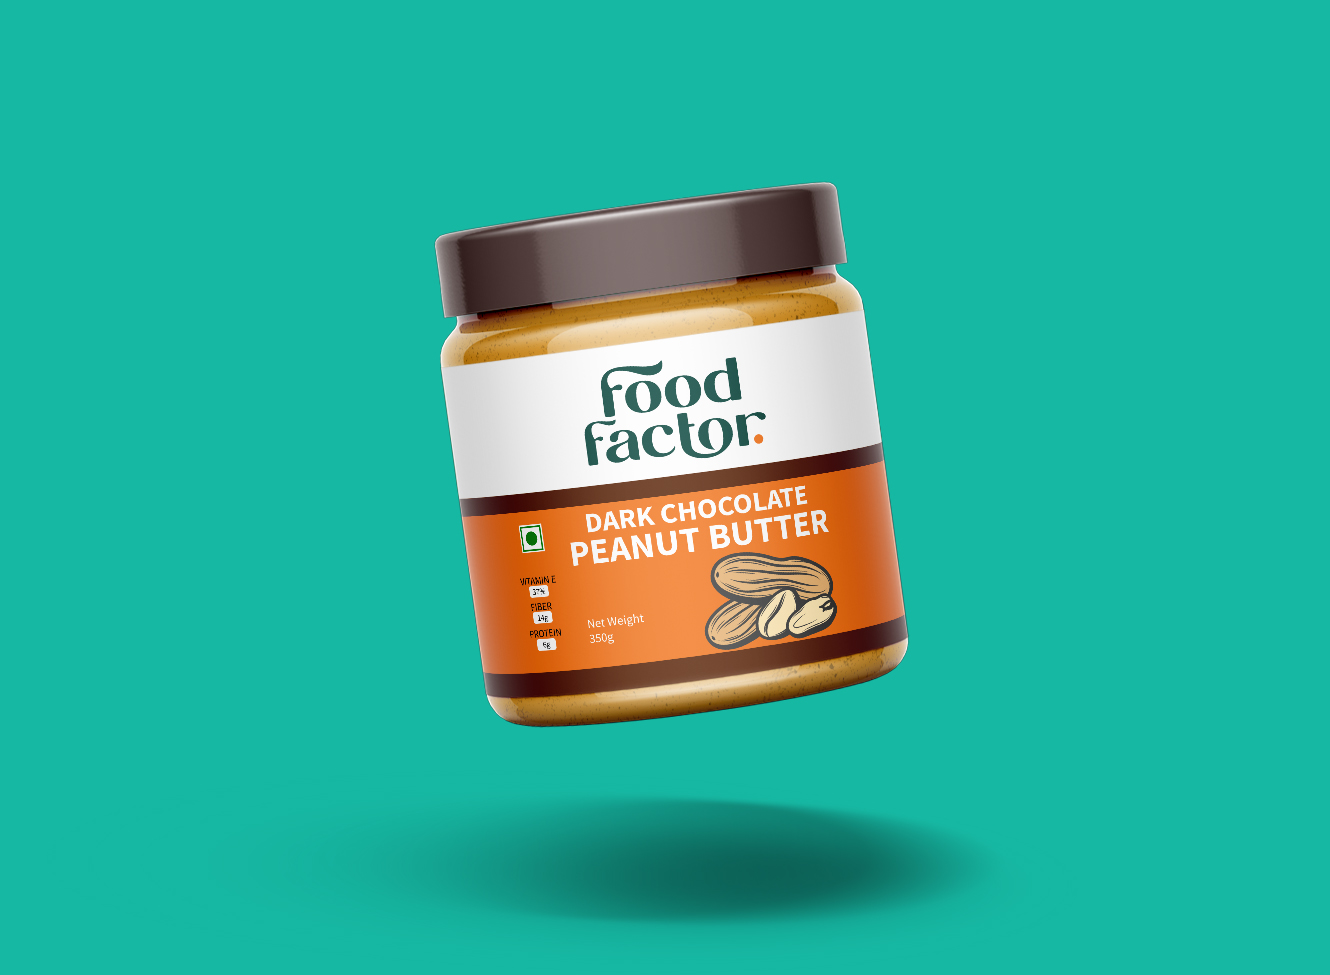 Food Factor peanut butter spread